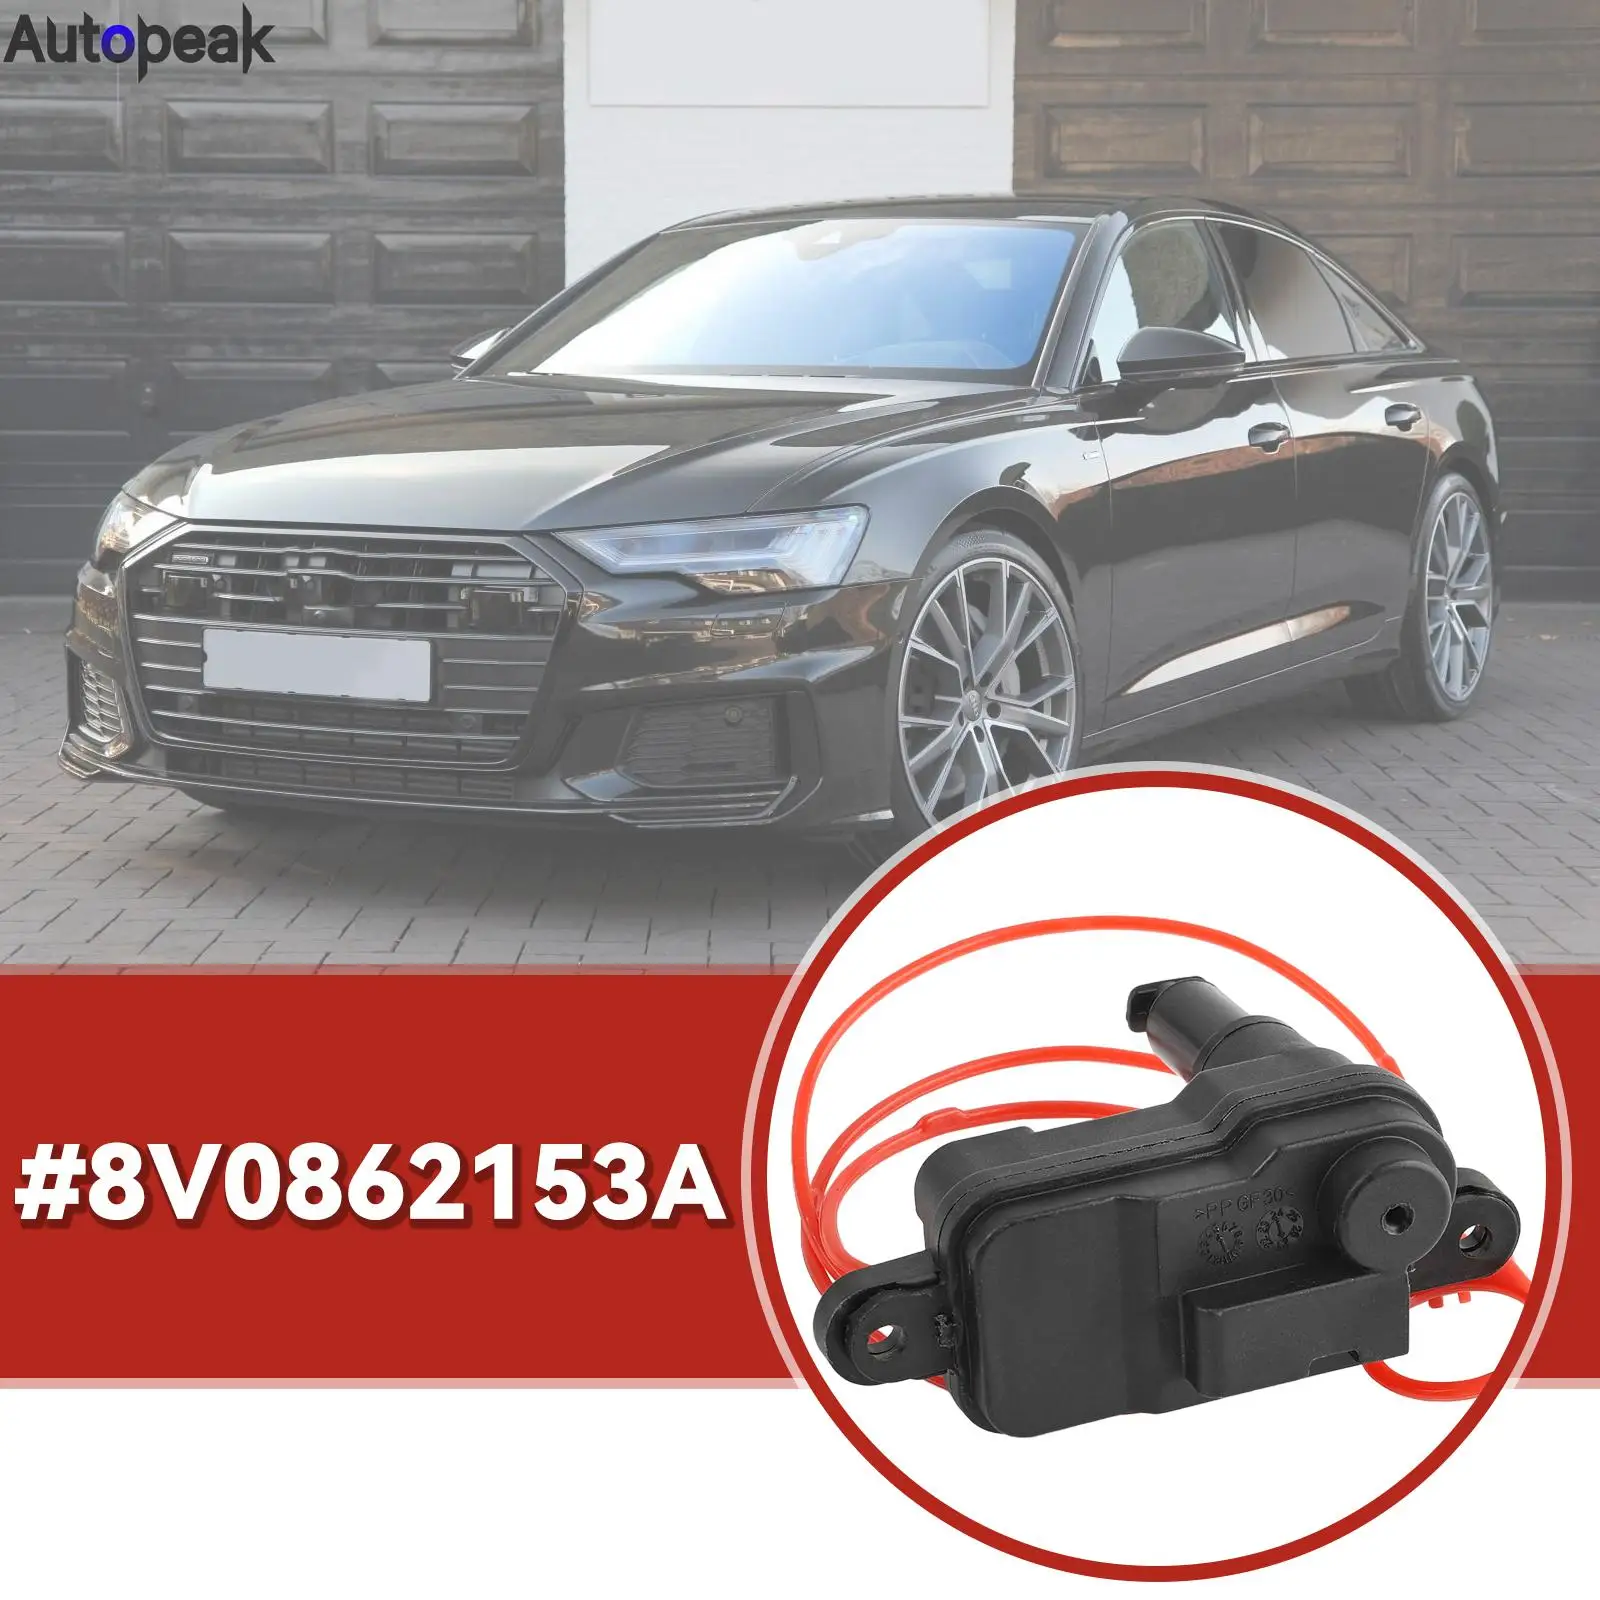 

8V0862153A автомобильный топливный наполнитель, клапан дверного замка, привод управления для Audi A1 A7 A8 Q3 Q7 A3 S3 A4 A6 RS3 8V0862153B 8V0862153